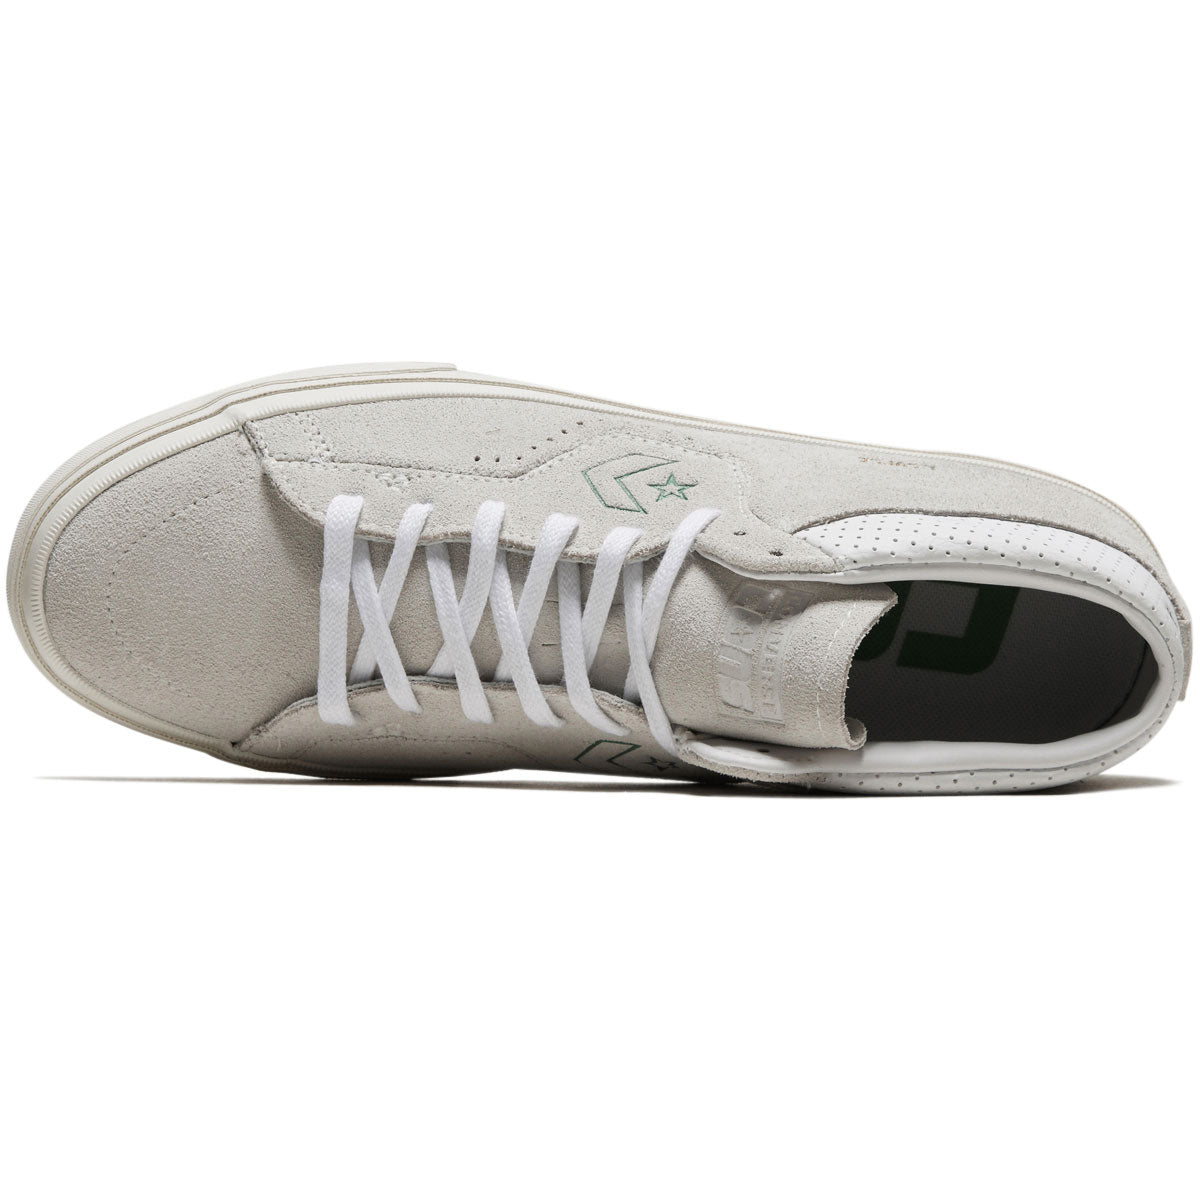 Converse Louie Lopez Pro Mid Shoes - Vaporous Gray/White/Egret image 3